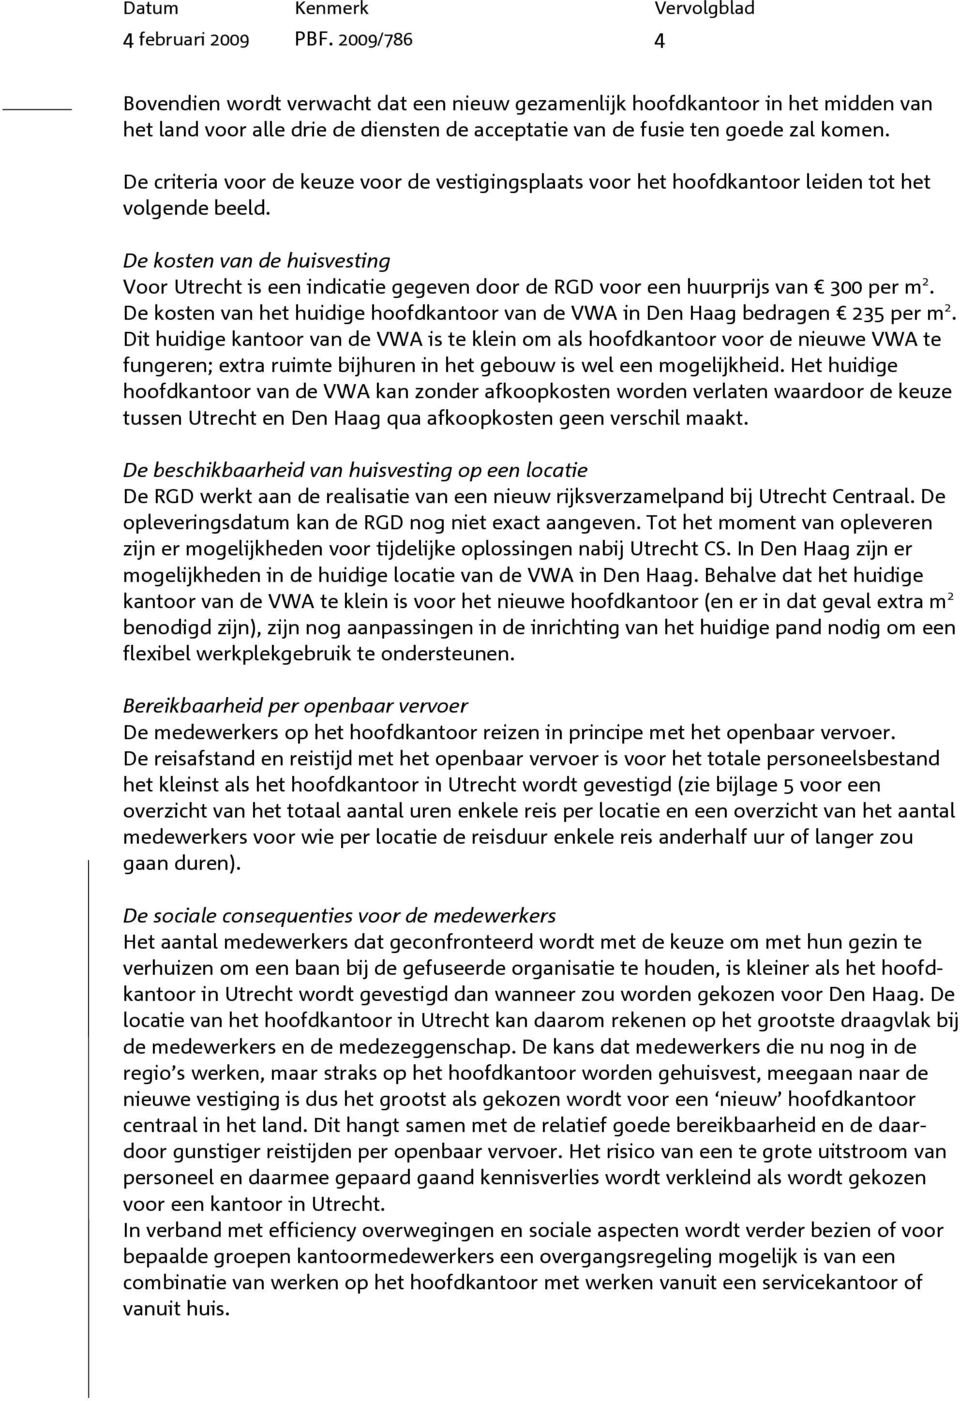 De kosten van de huisvesting Voor Utrecht is een indicatie gegeven door de RGD voor een huurprijs van 300 per m 2. De kosten van het huidige hoofdkantoor van de VWA in Den Haag bedragen 235 per m 2.